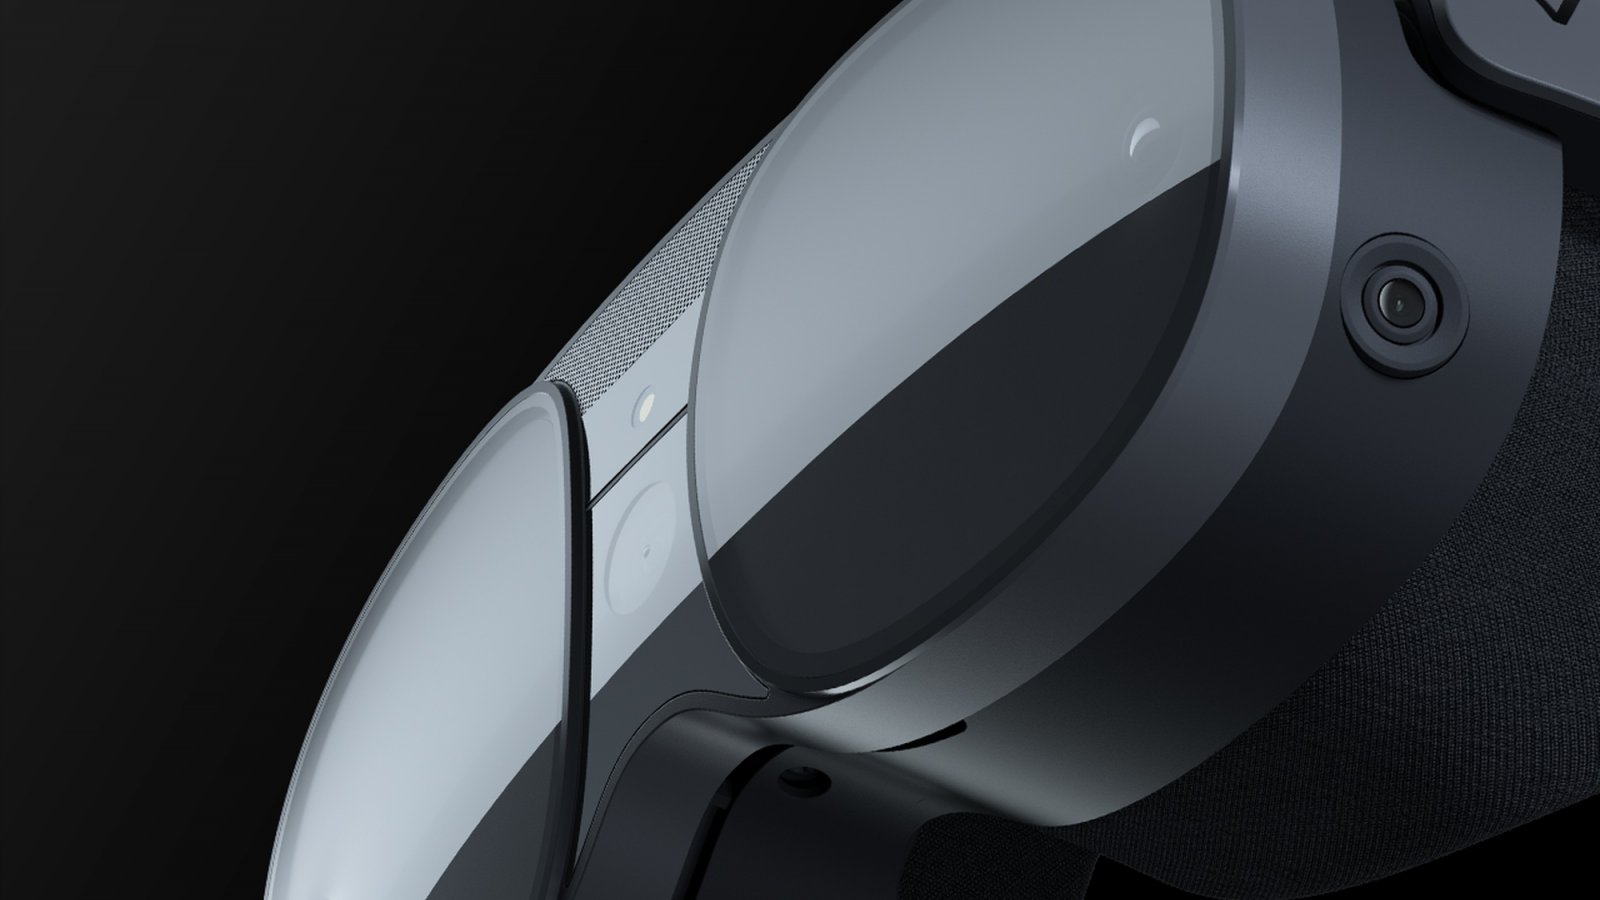 HTC lavora a un nuovo Visore VR per competere con Meta Quest 2, ecco i primi dettagli